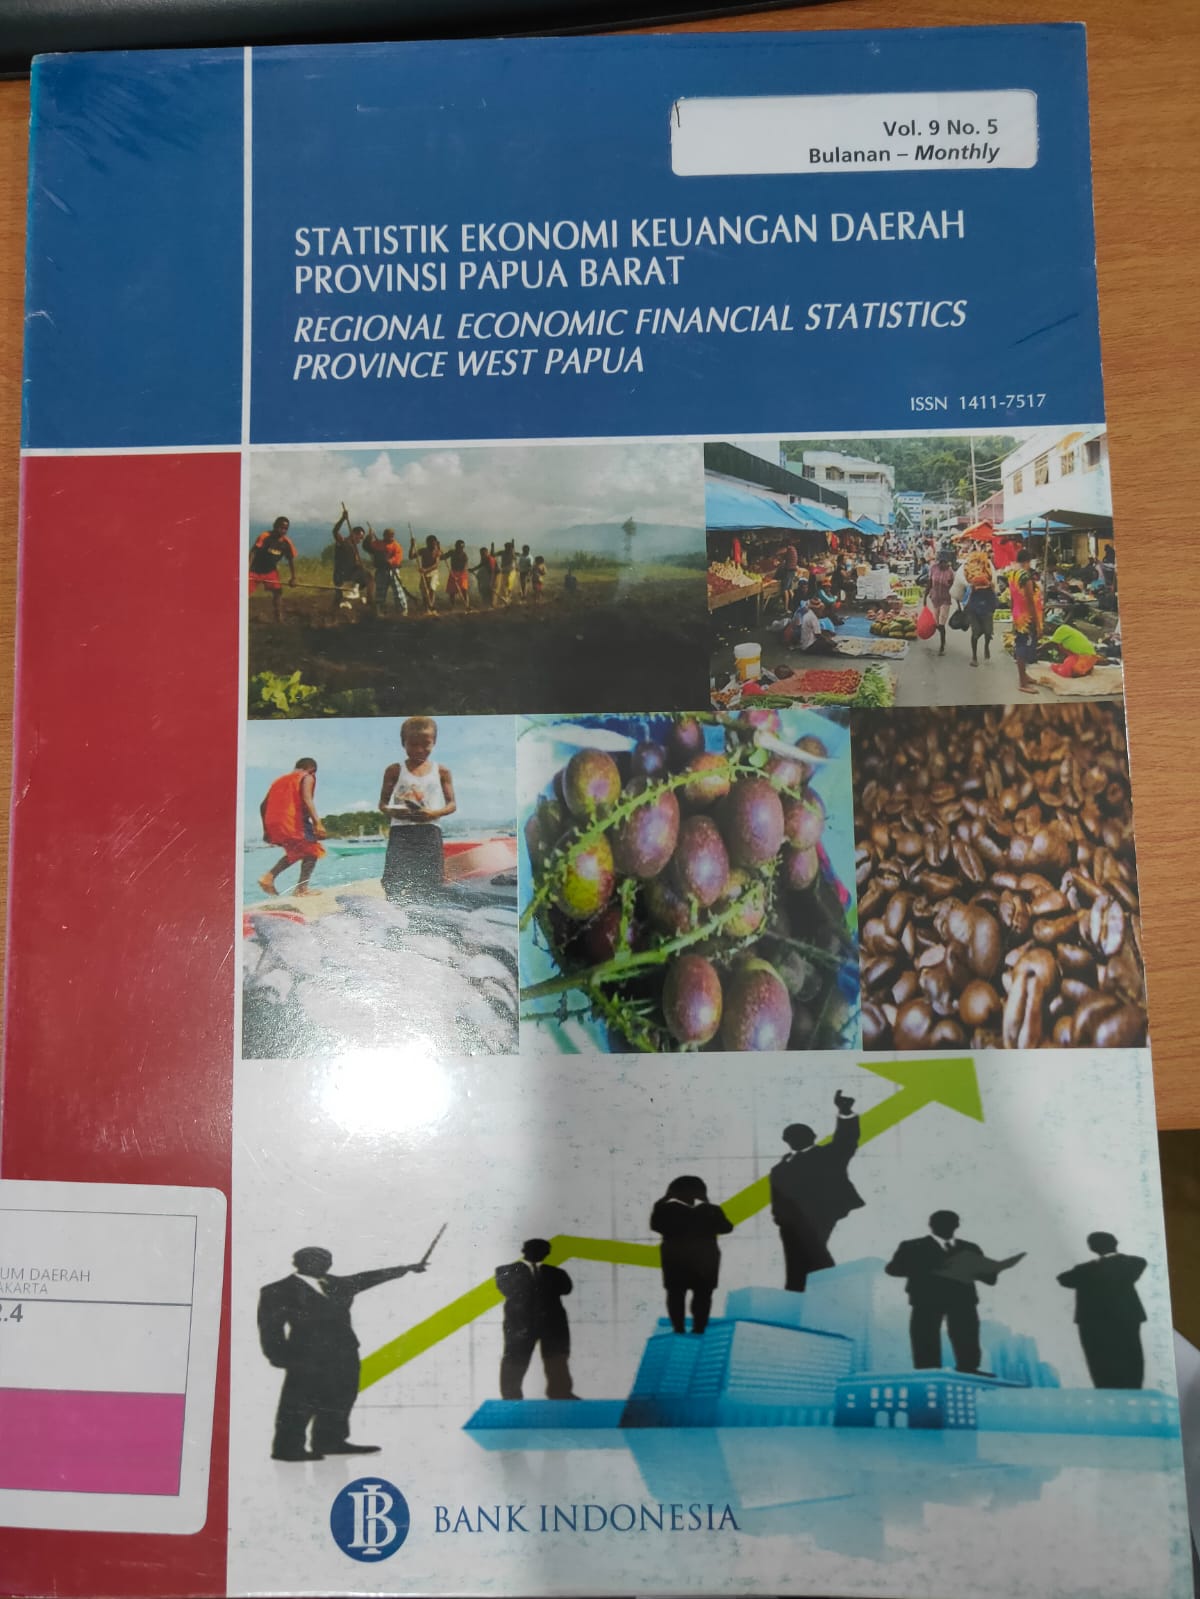 Statistik Ekonomi Keuangan Daerah Provinsi Papua Barat Vol 9 No. 5 Bulan Mei 2011